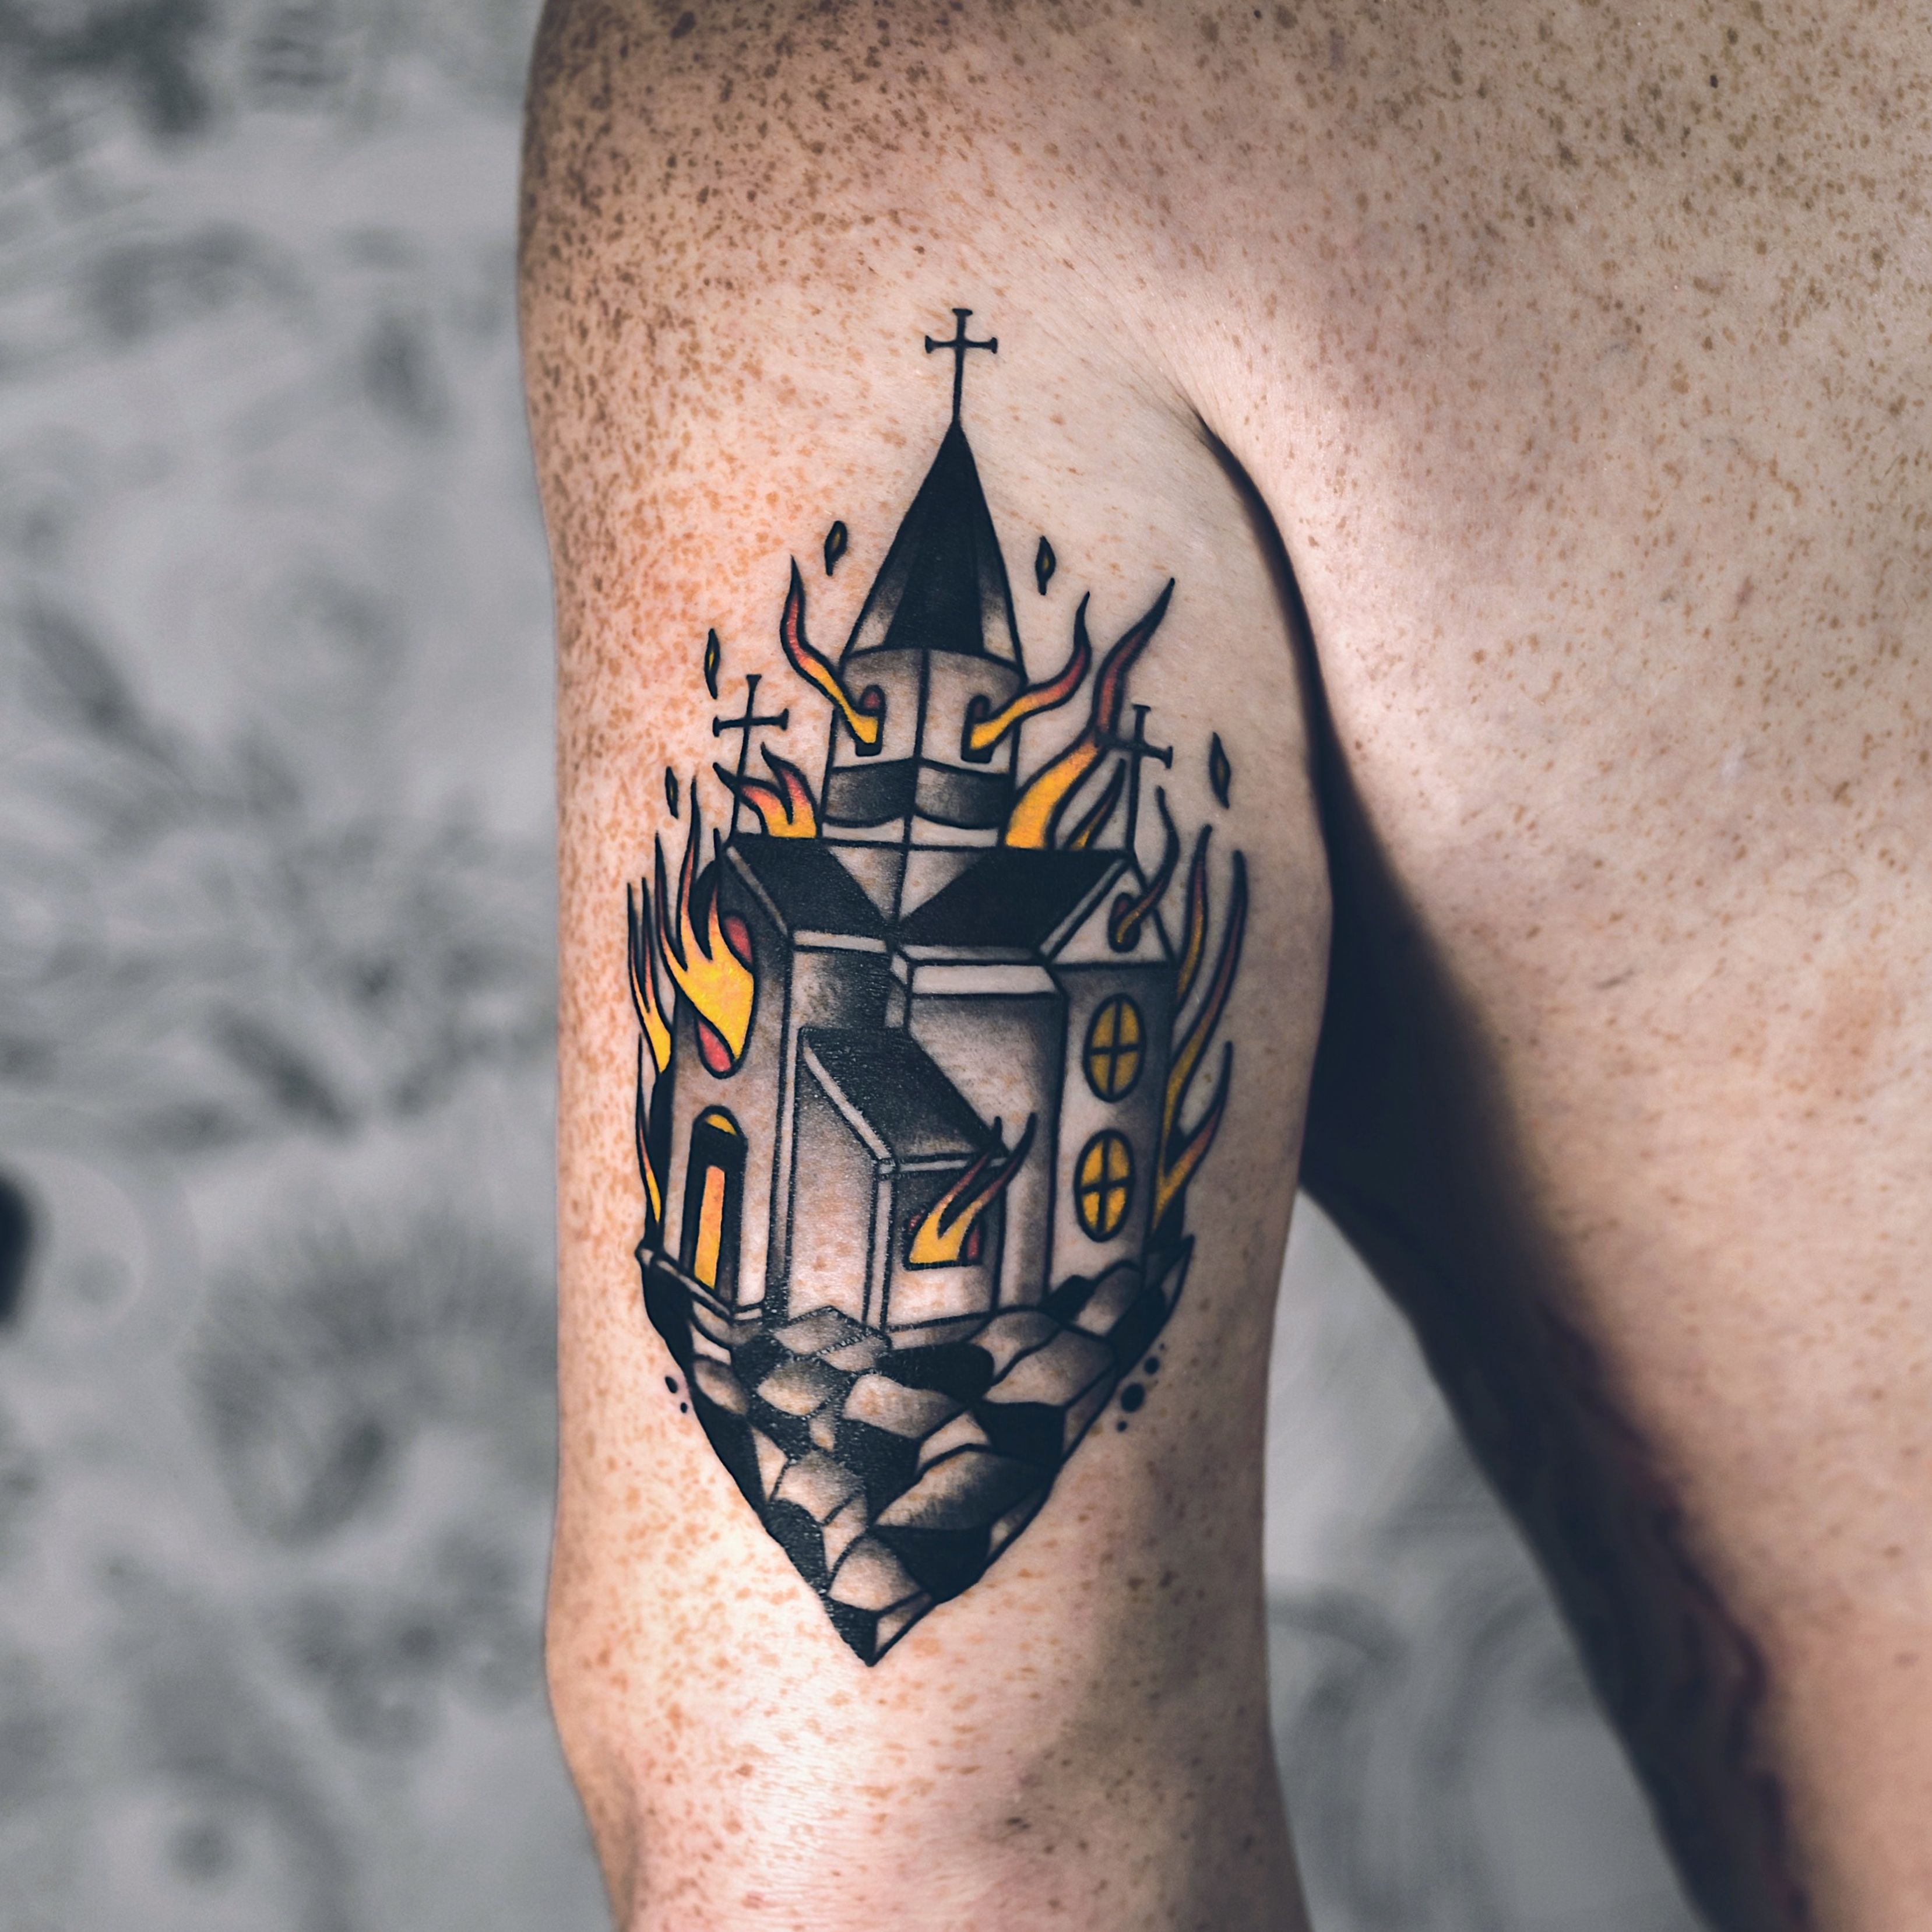 igreja' in Tattoos • Search in +1.3M Tattoos Now • Tattoodo